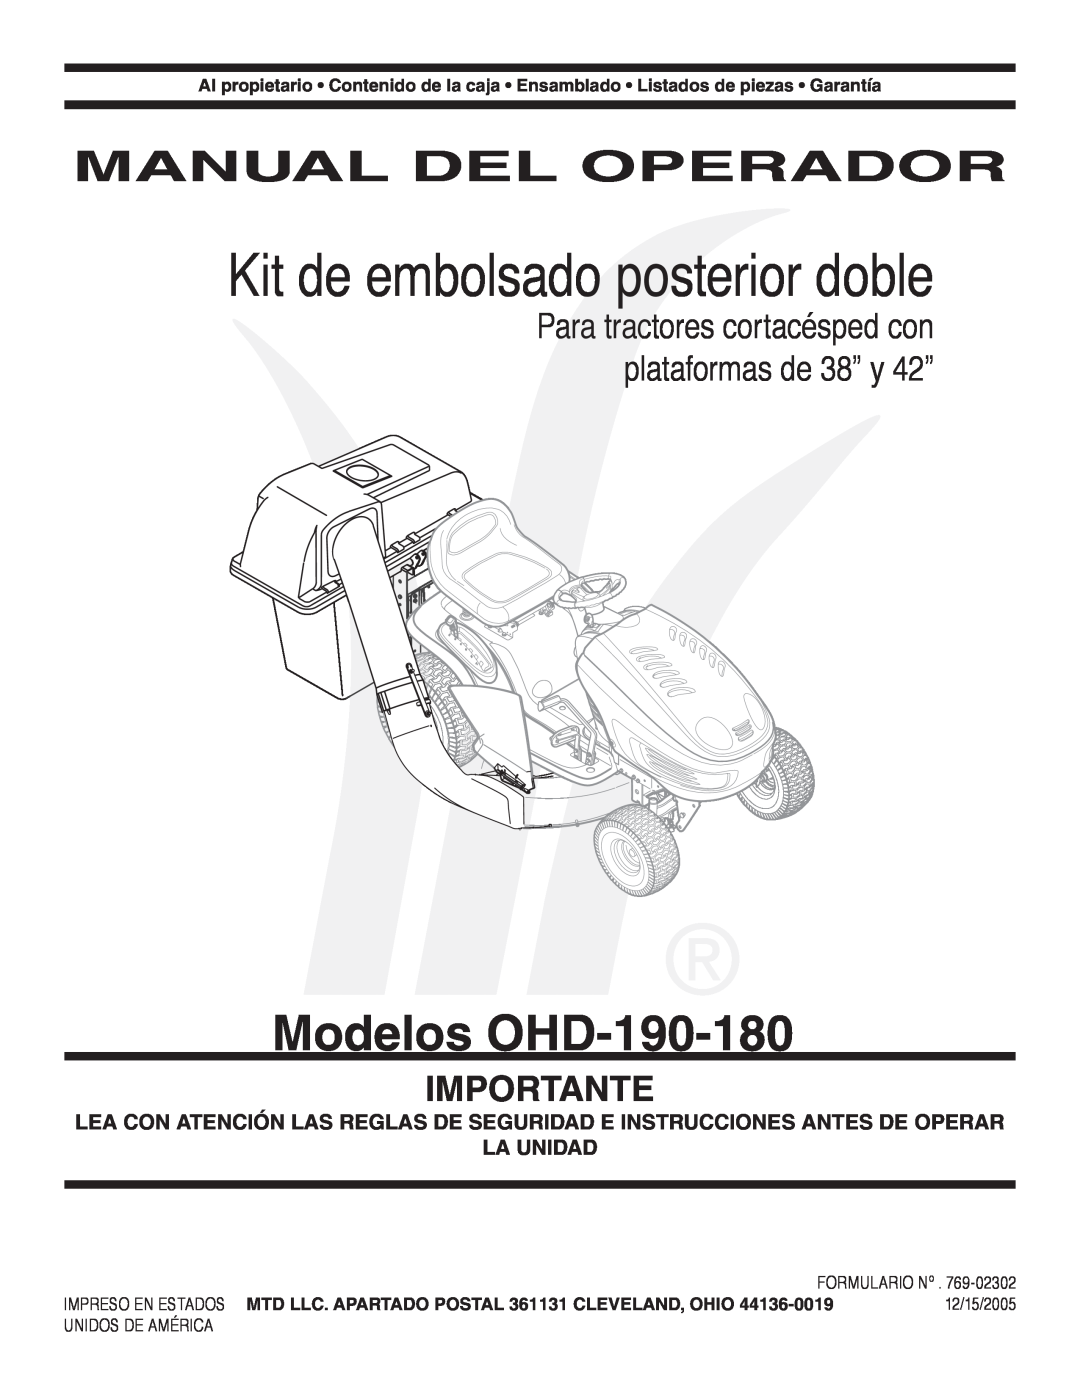 MTD OHD 190-180 Kit de embolsado posterior doble, Modelos OHD-190-180, Manual Del Operador, Importante, Formulario Nº 